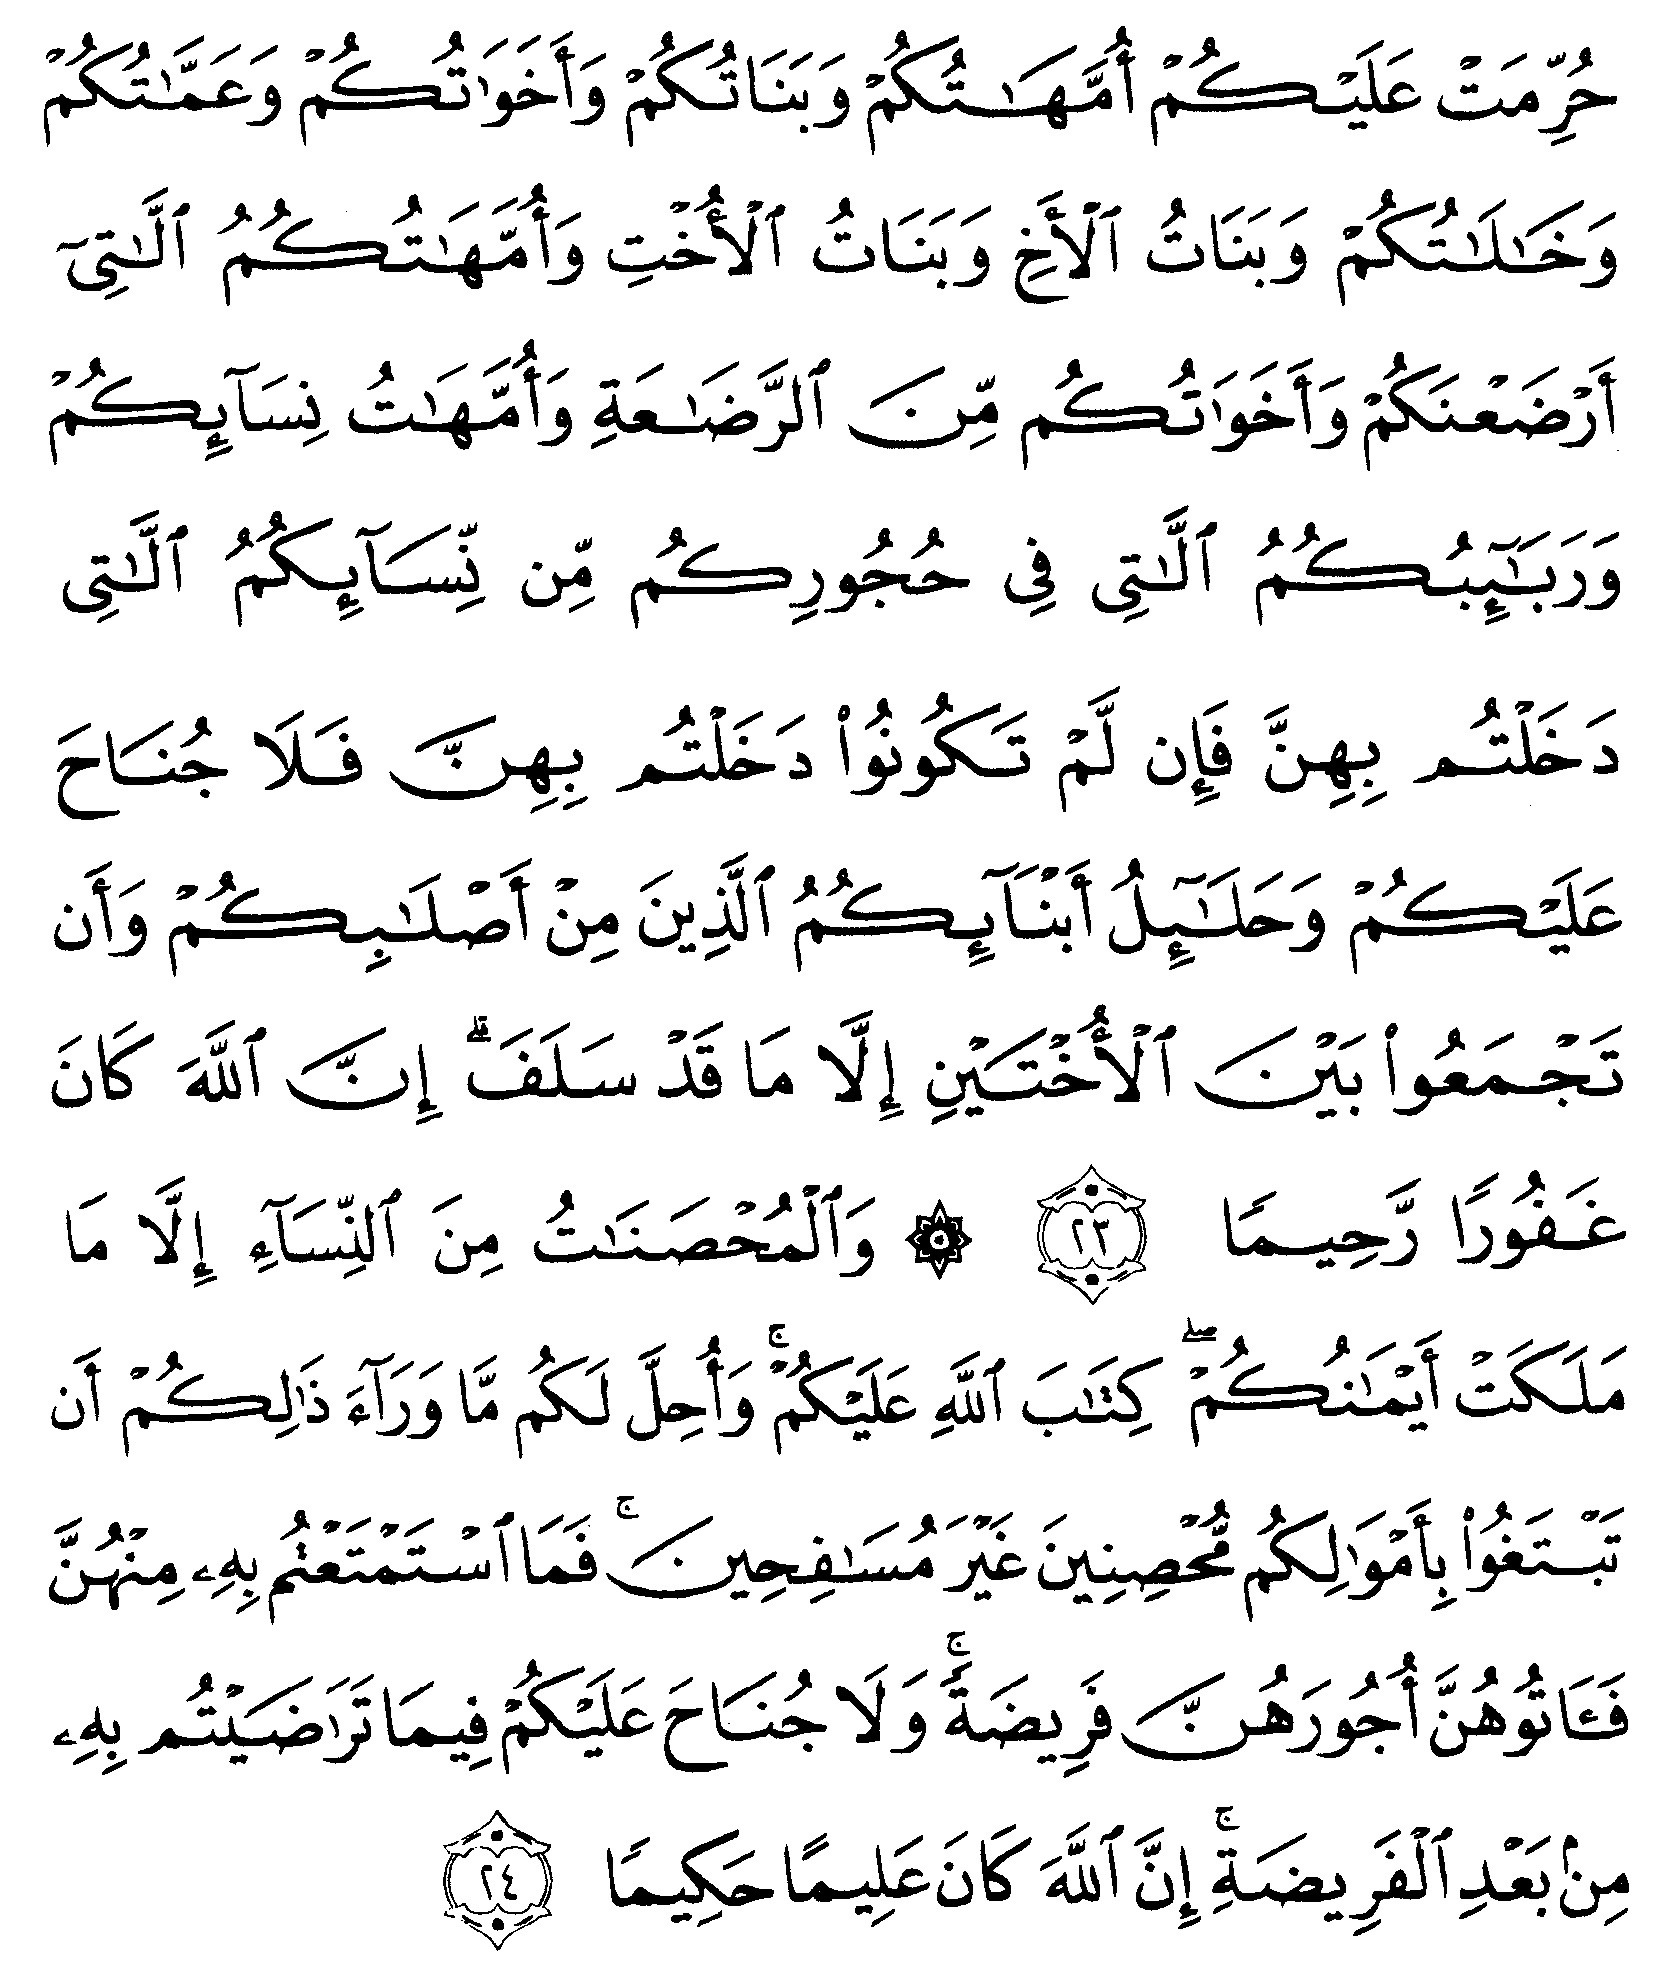 tulisan arab alquran surat an nisaa ayat 23 24 “